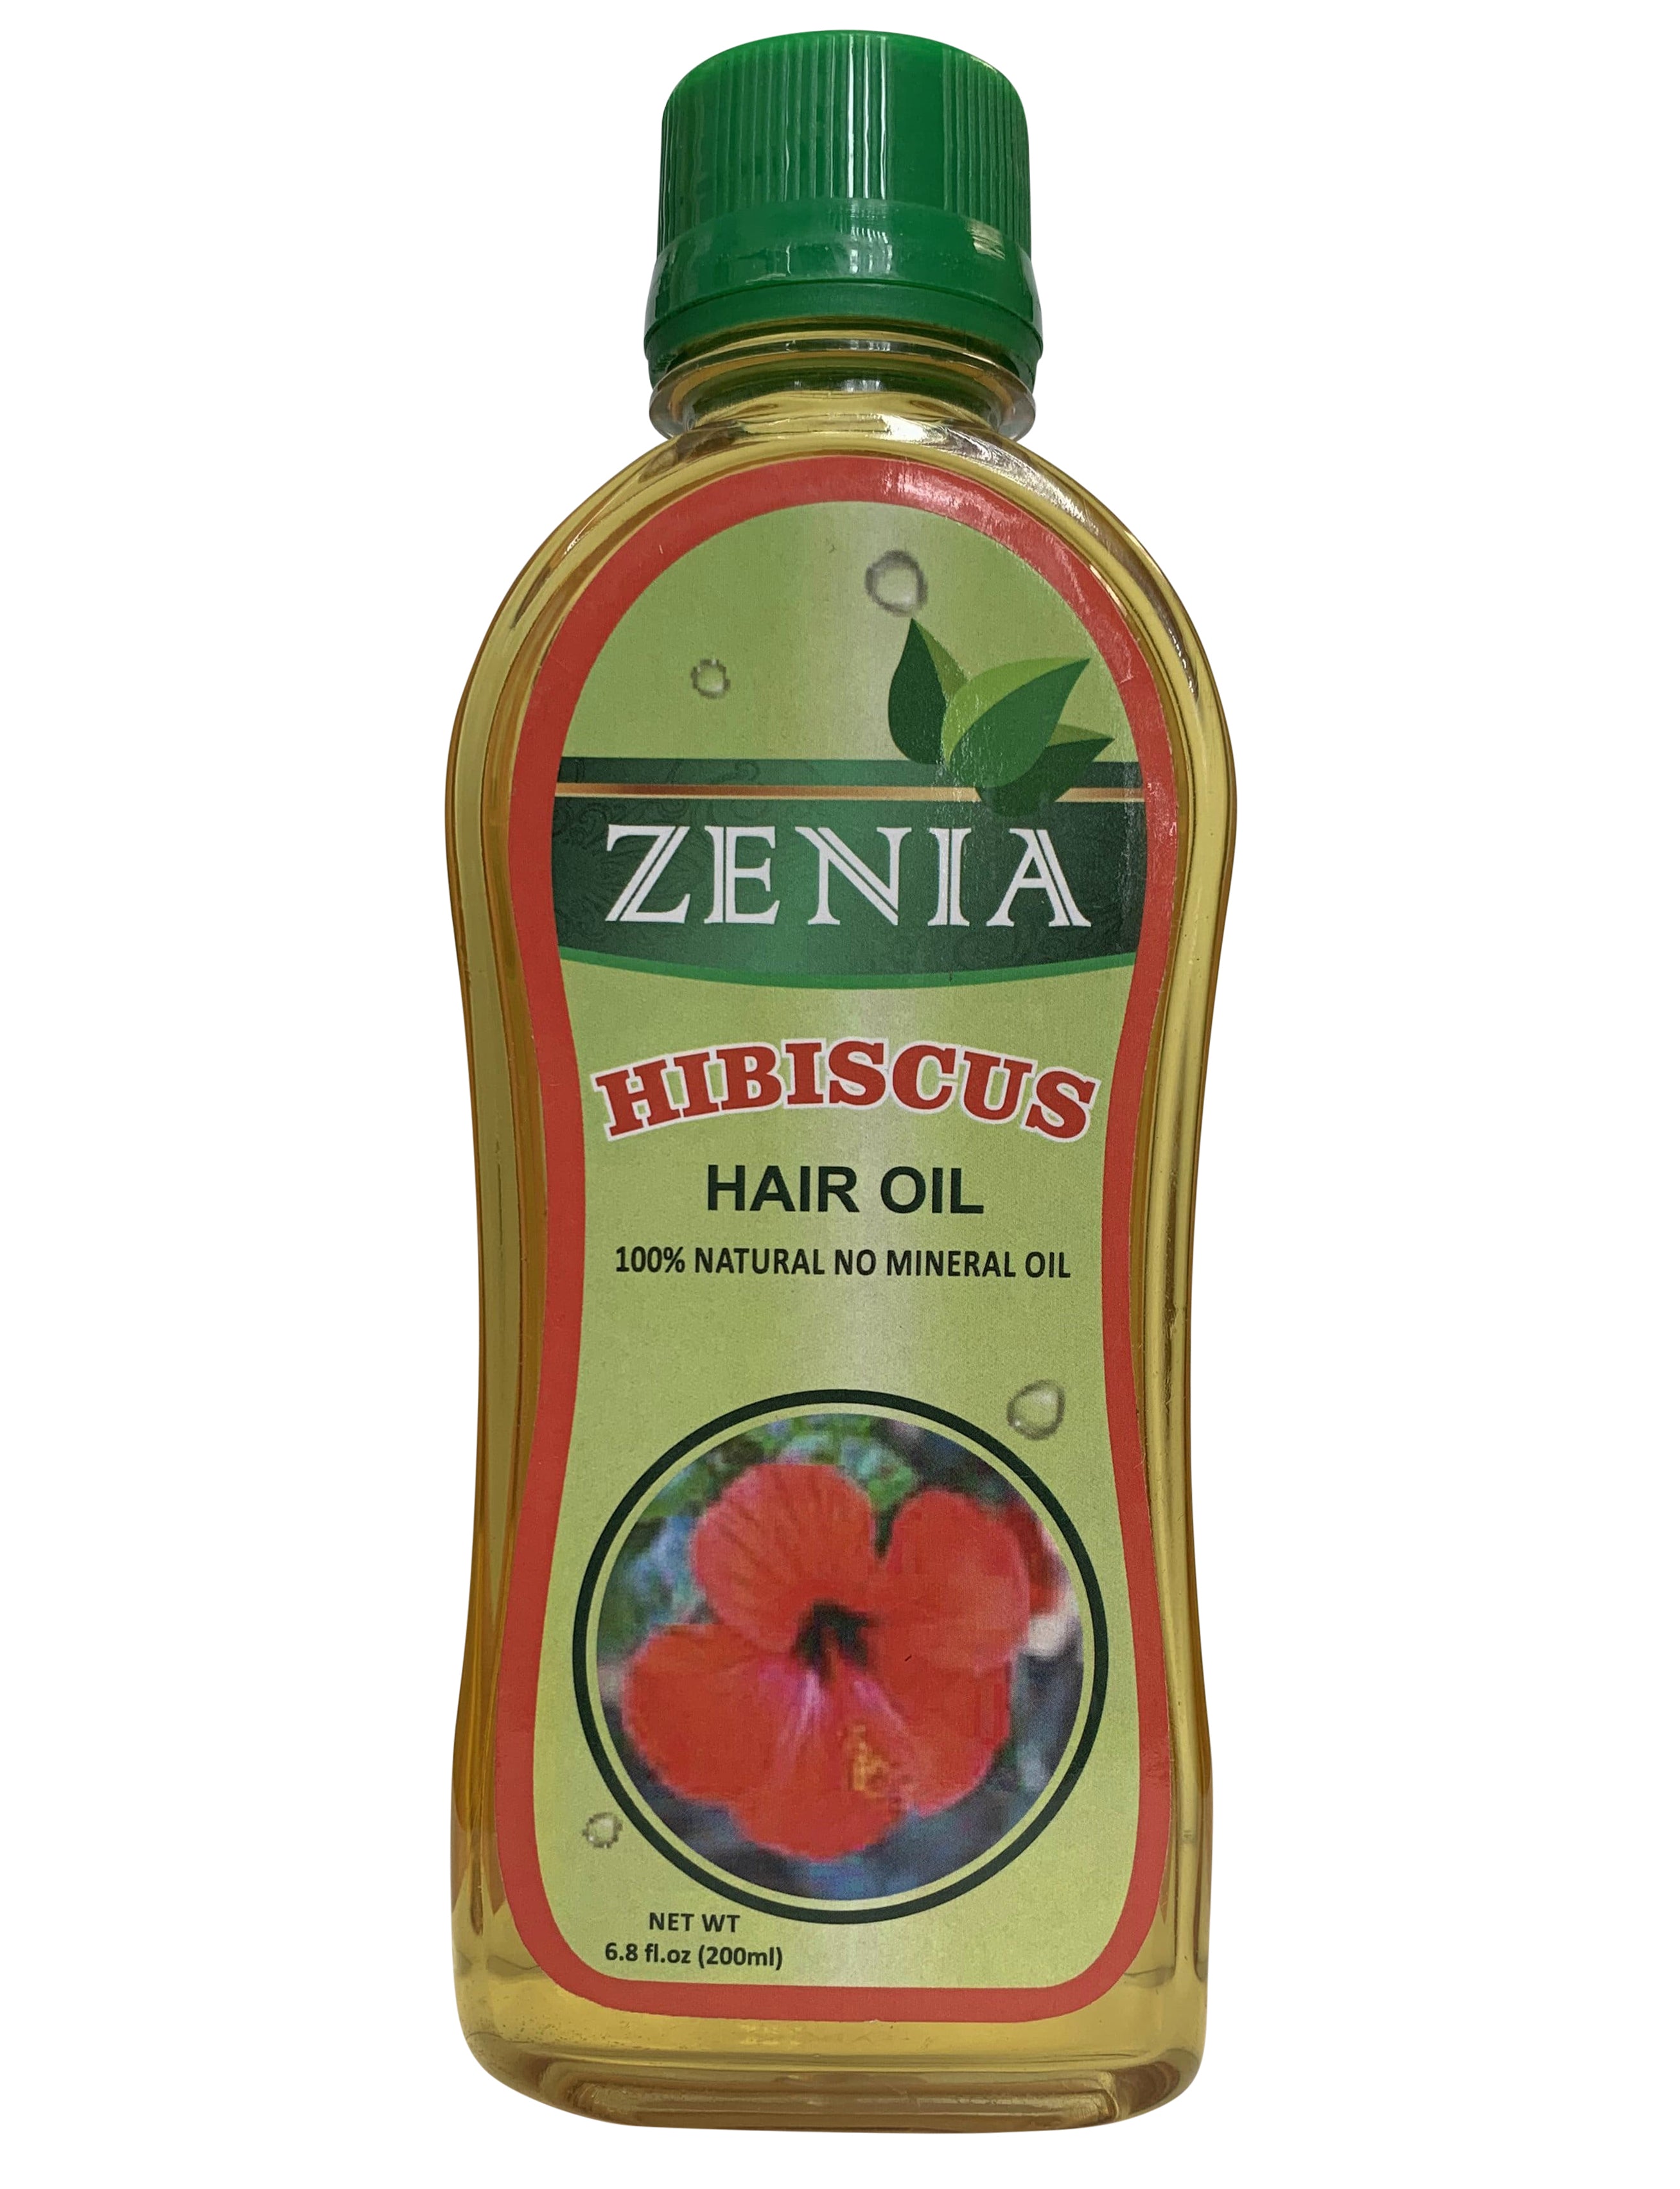 Zenia Hibiscus Hair Oil 100% Natural No Mineral Oil 200ml